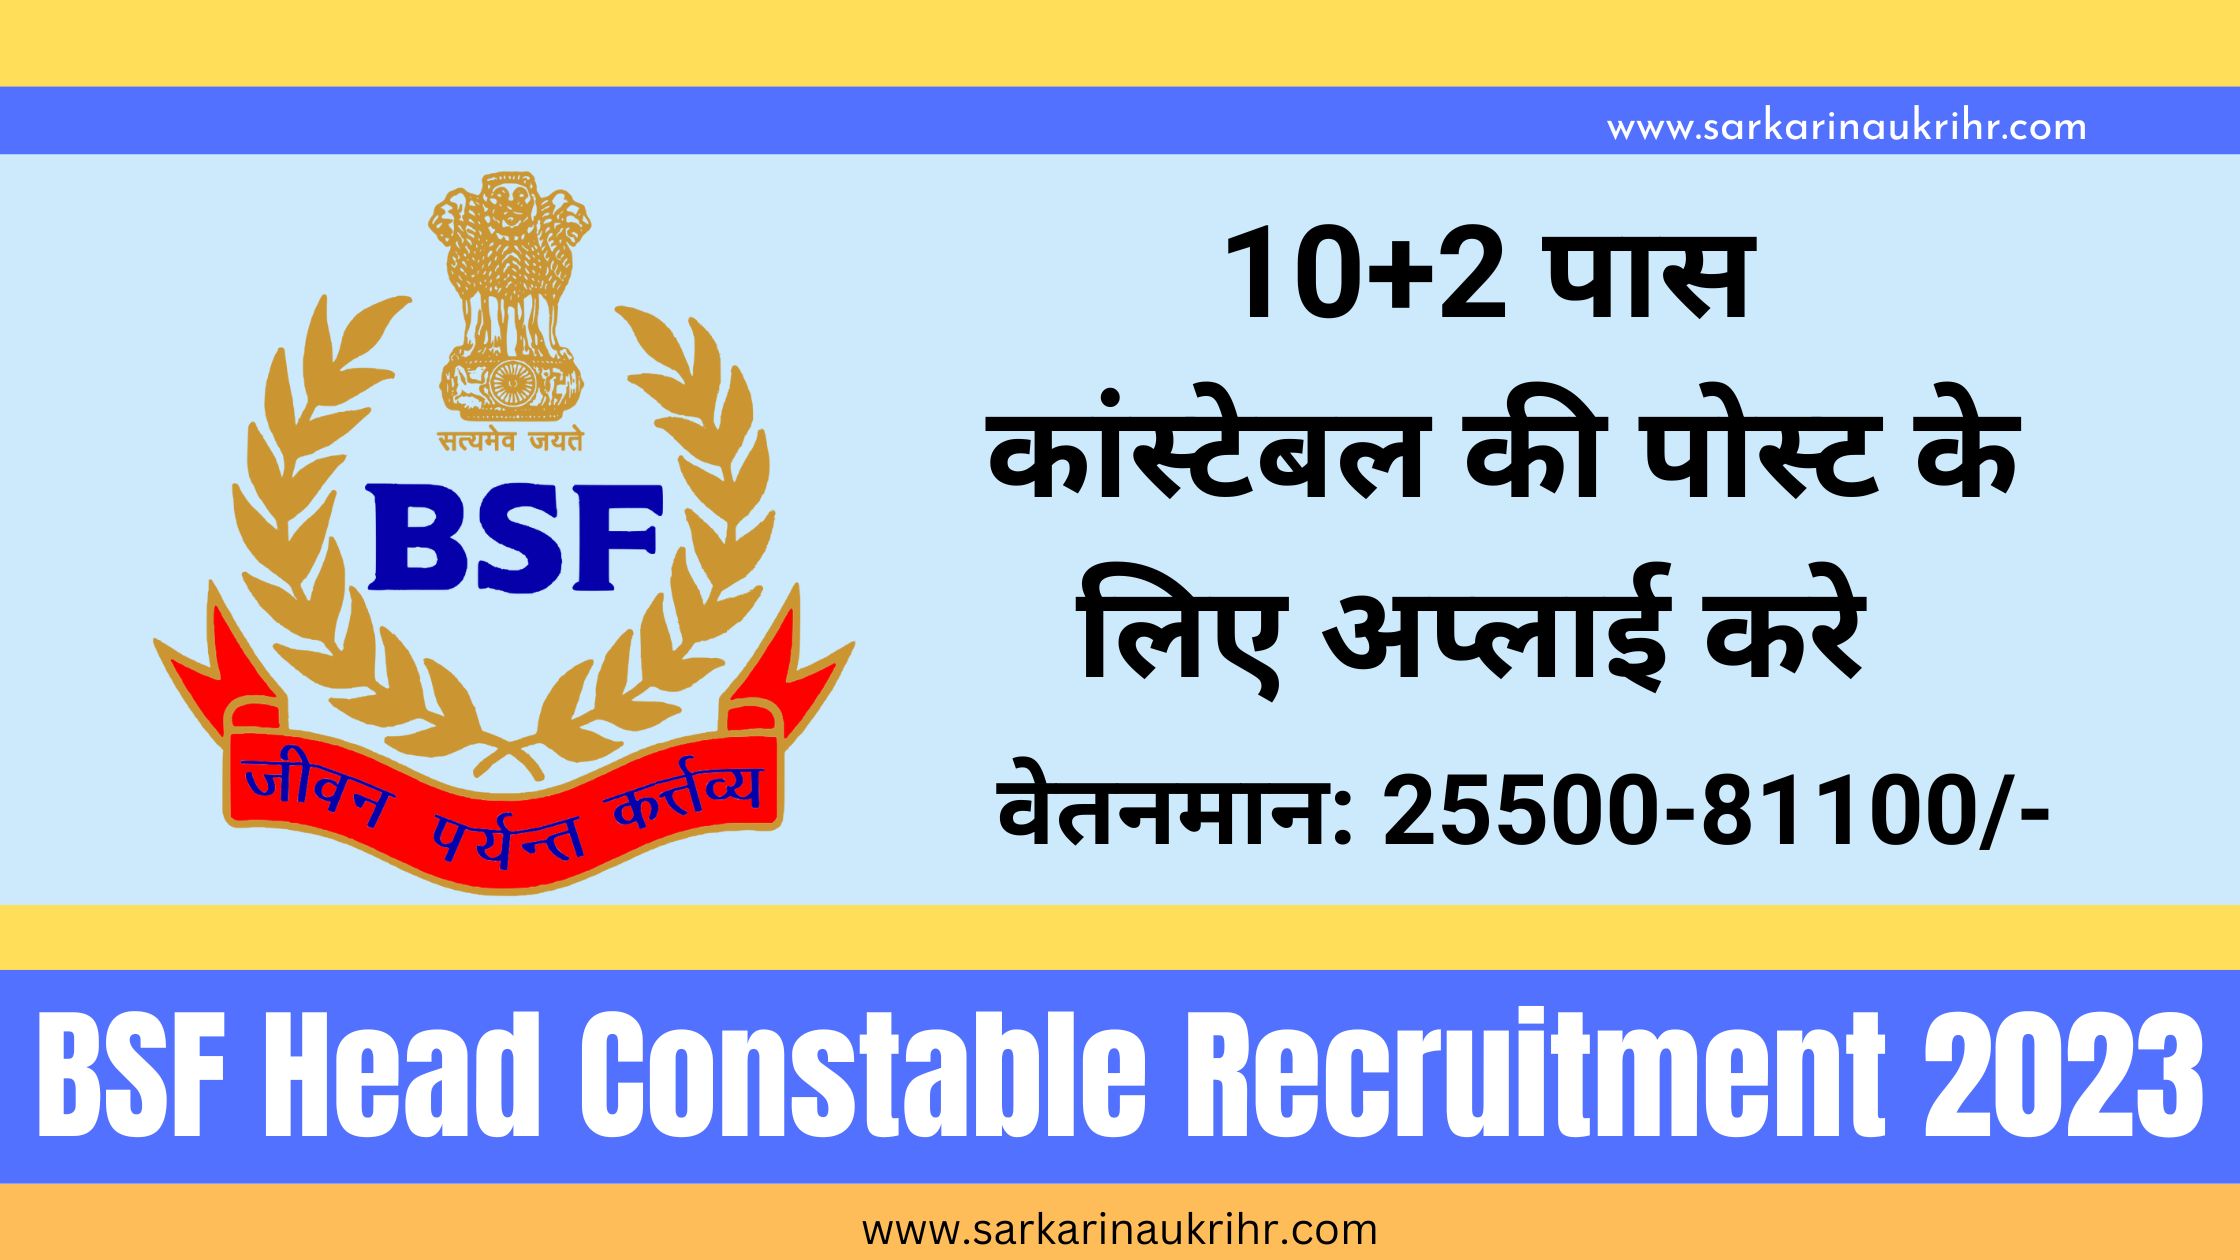 BSF Head Constable Recruitmen 2023